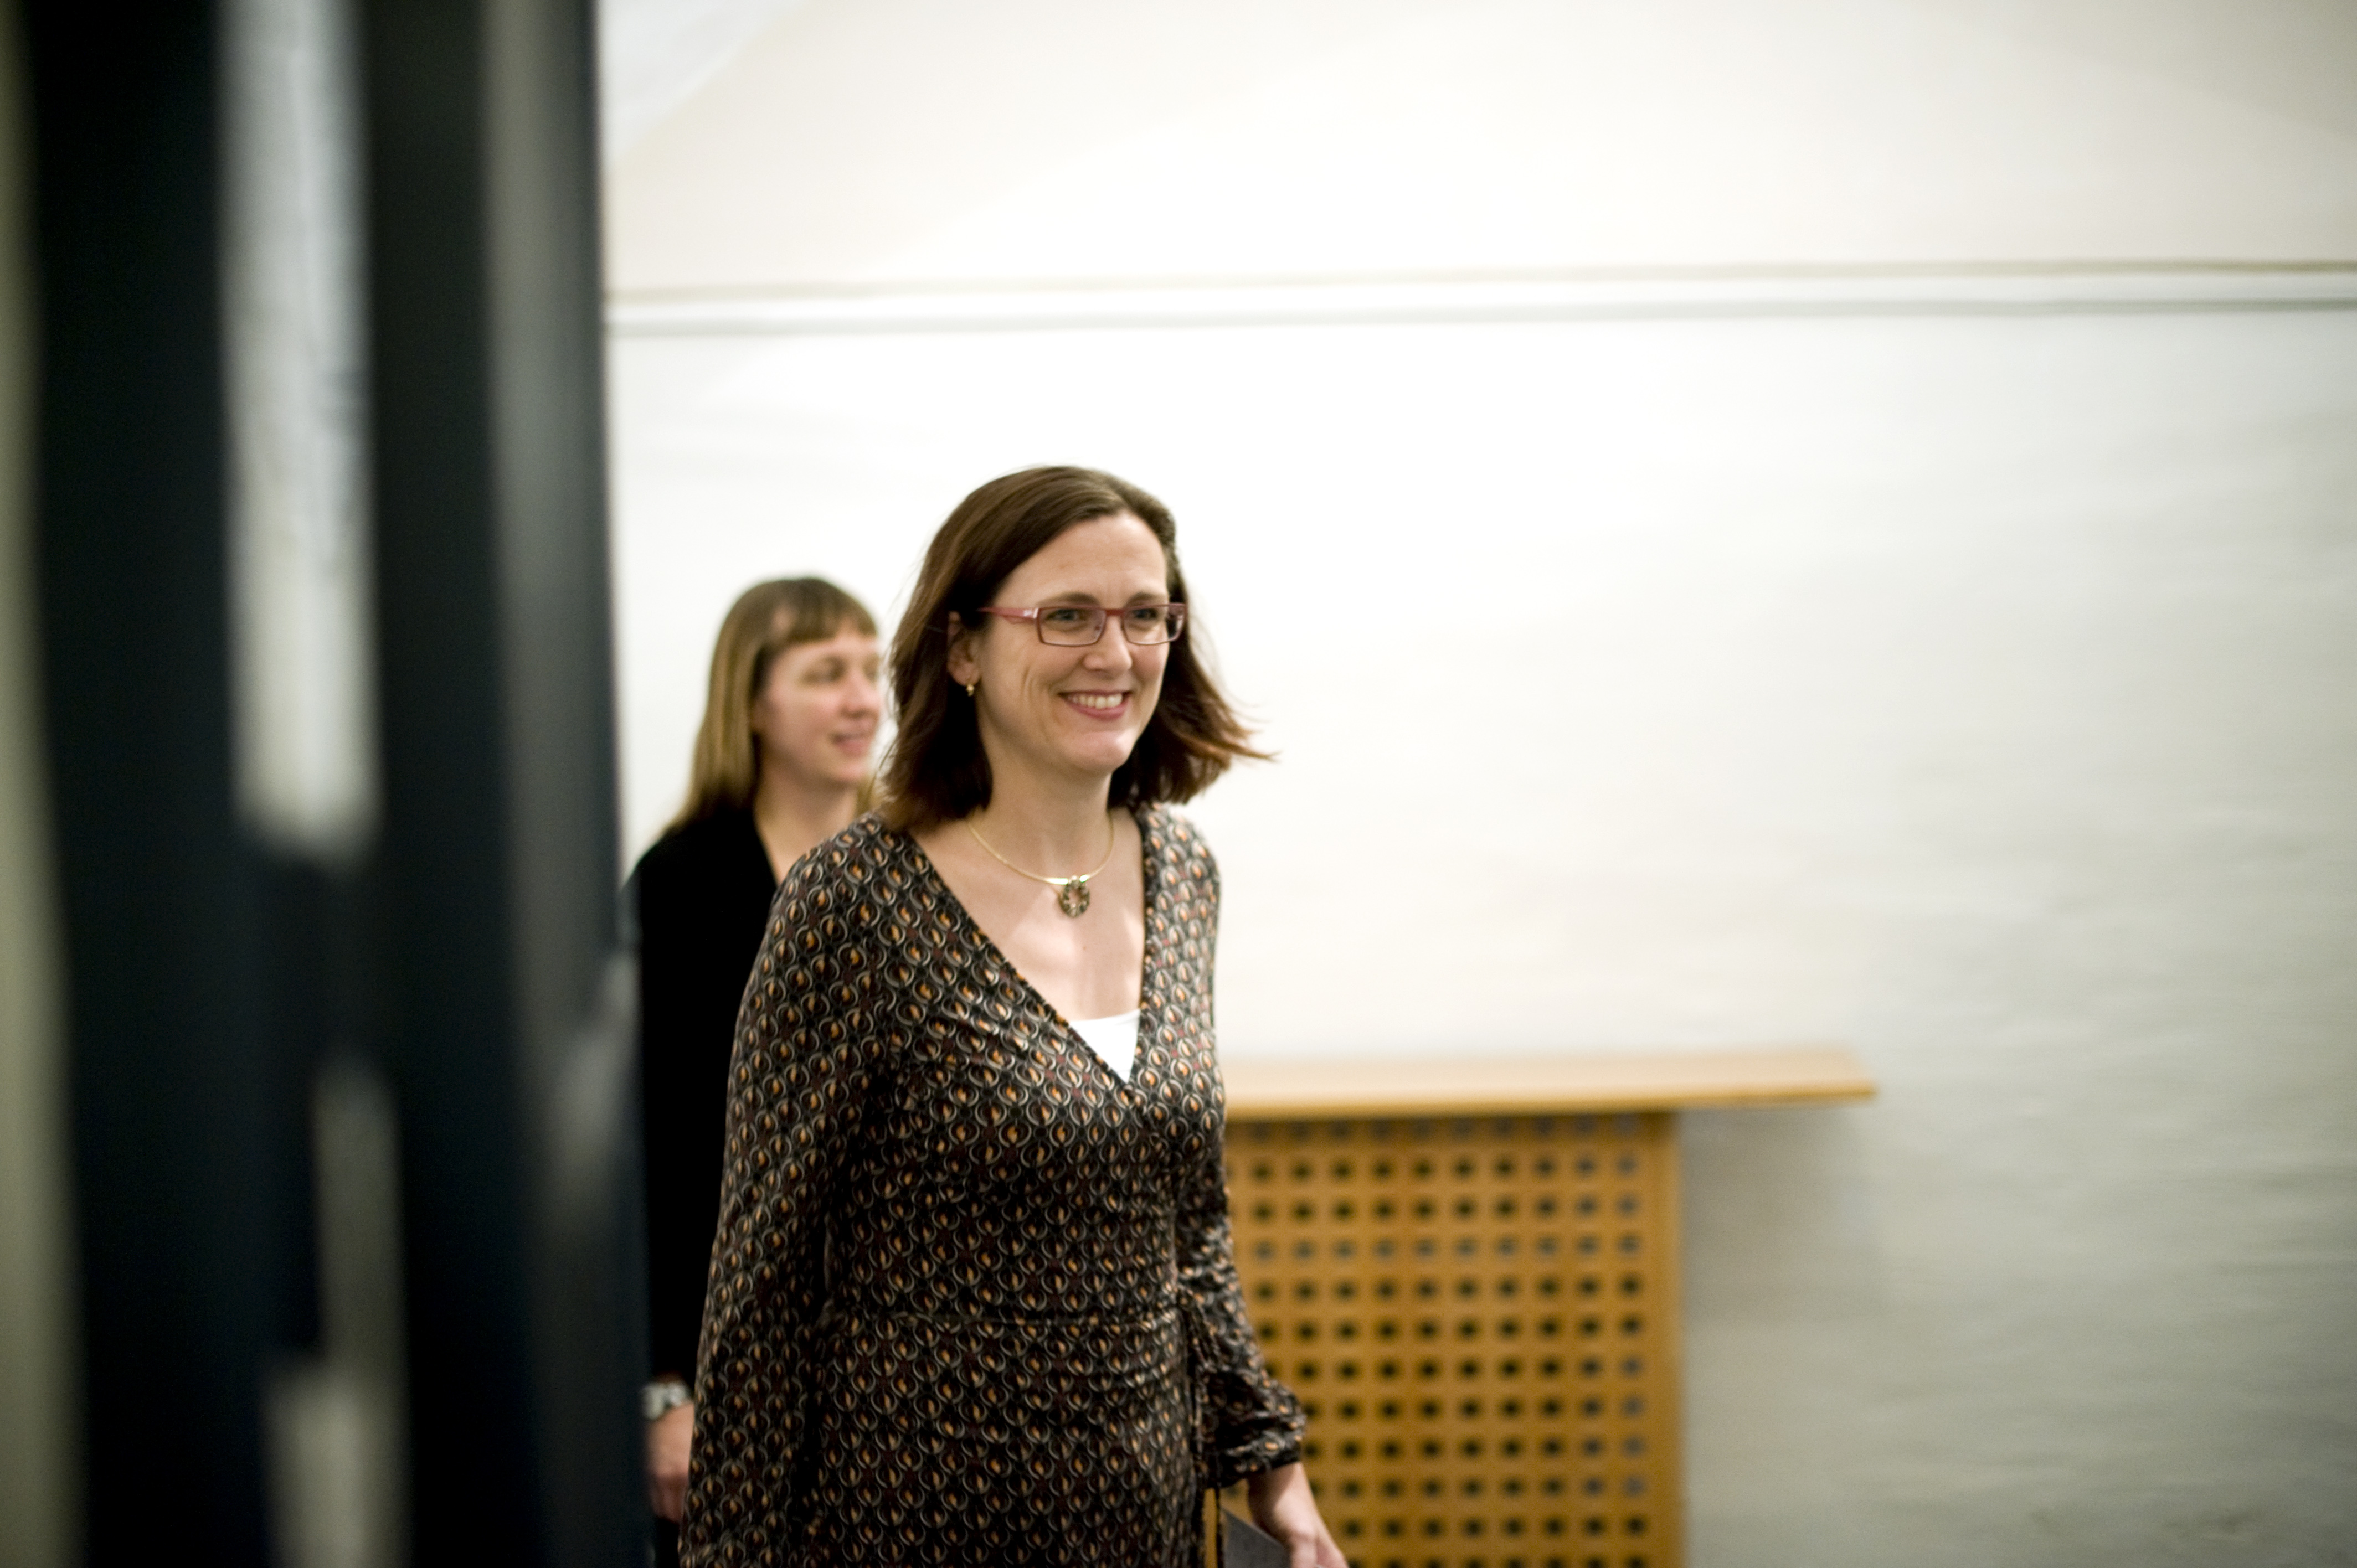 Trots att Cecilia Malmström lovade att garantera den personliga integriteten.